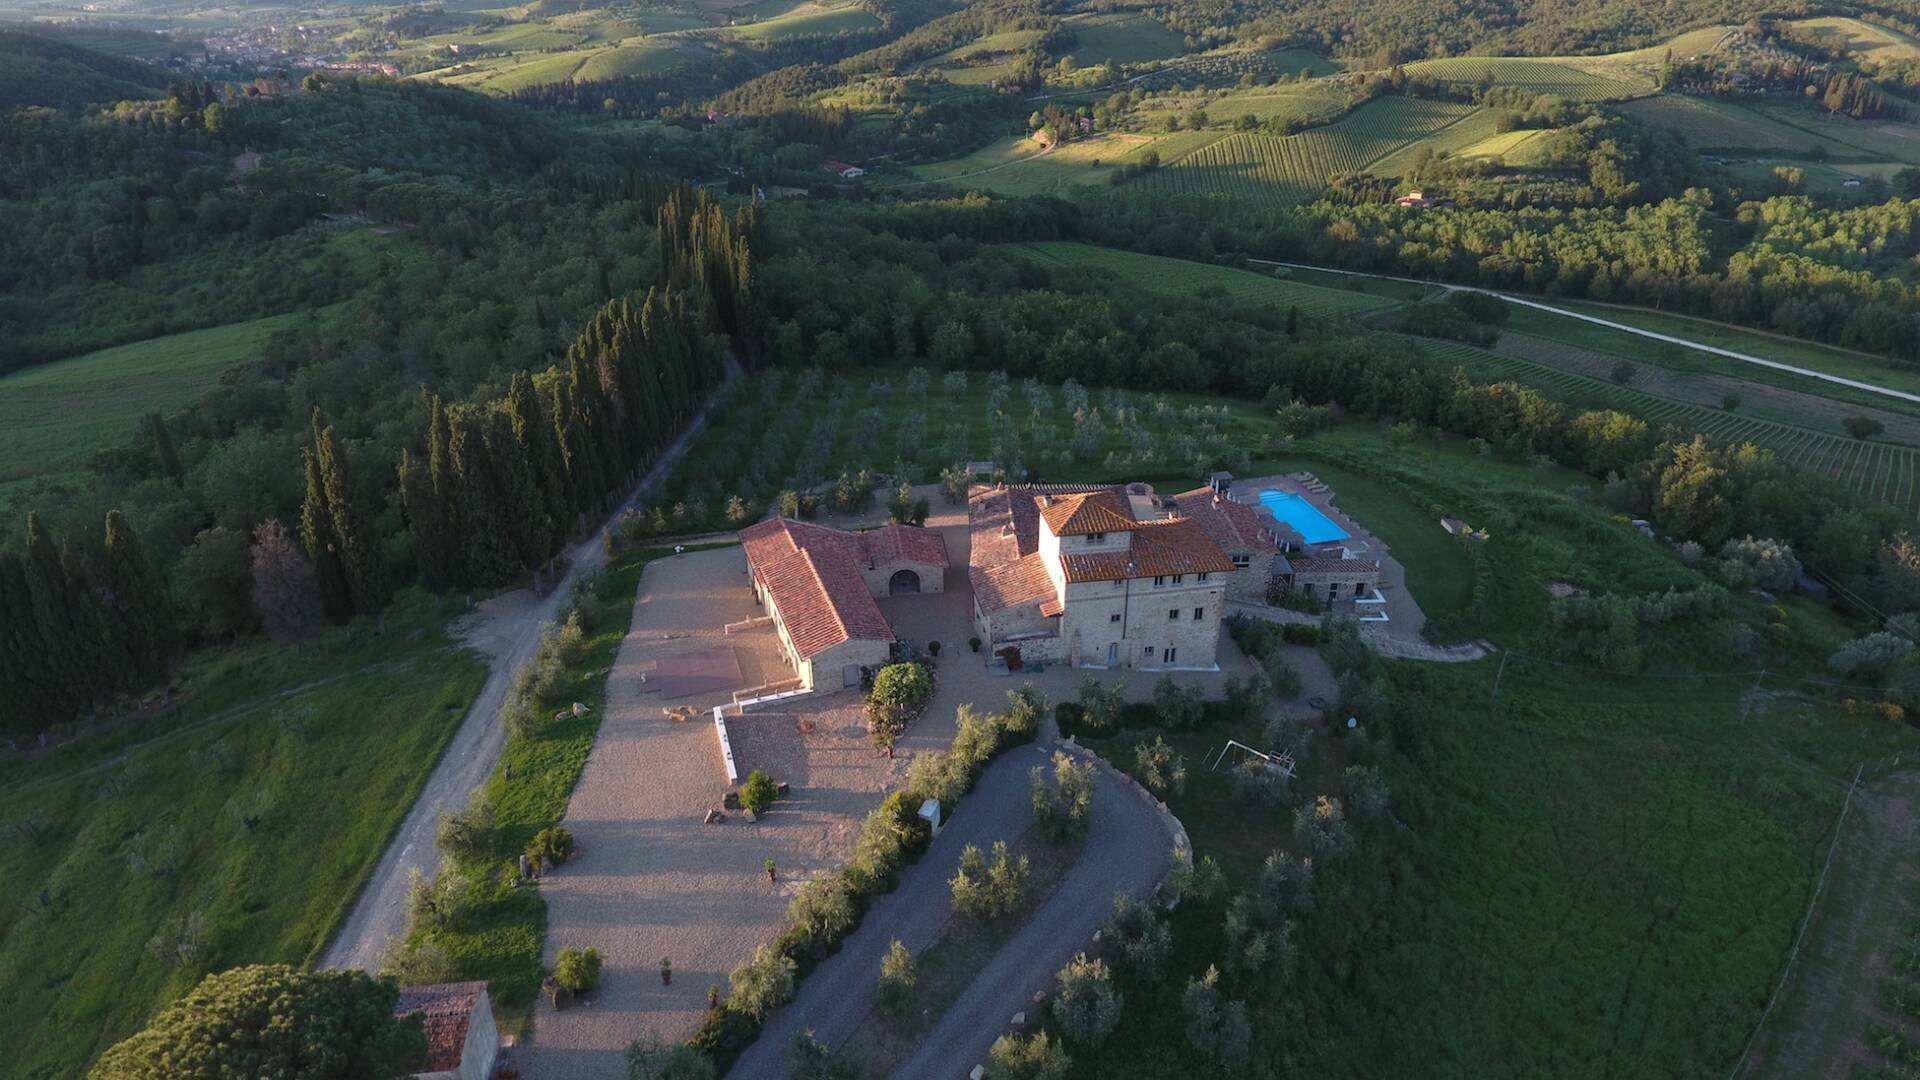 dimoradi-luxury-large-villa-vacation-tuscany-02_1920x1080_im_r7_h0_v0_t1_c000-000-000-255_q70.jpg